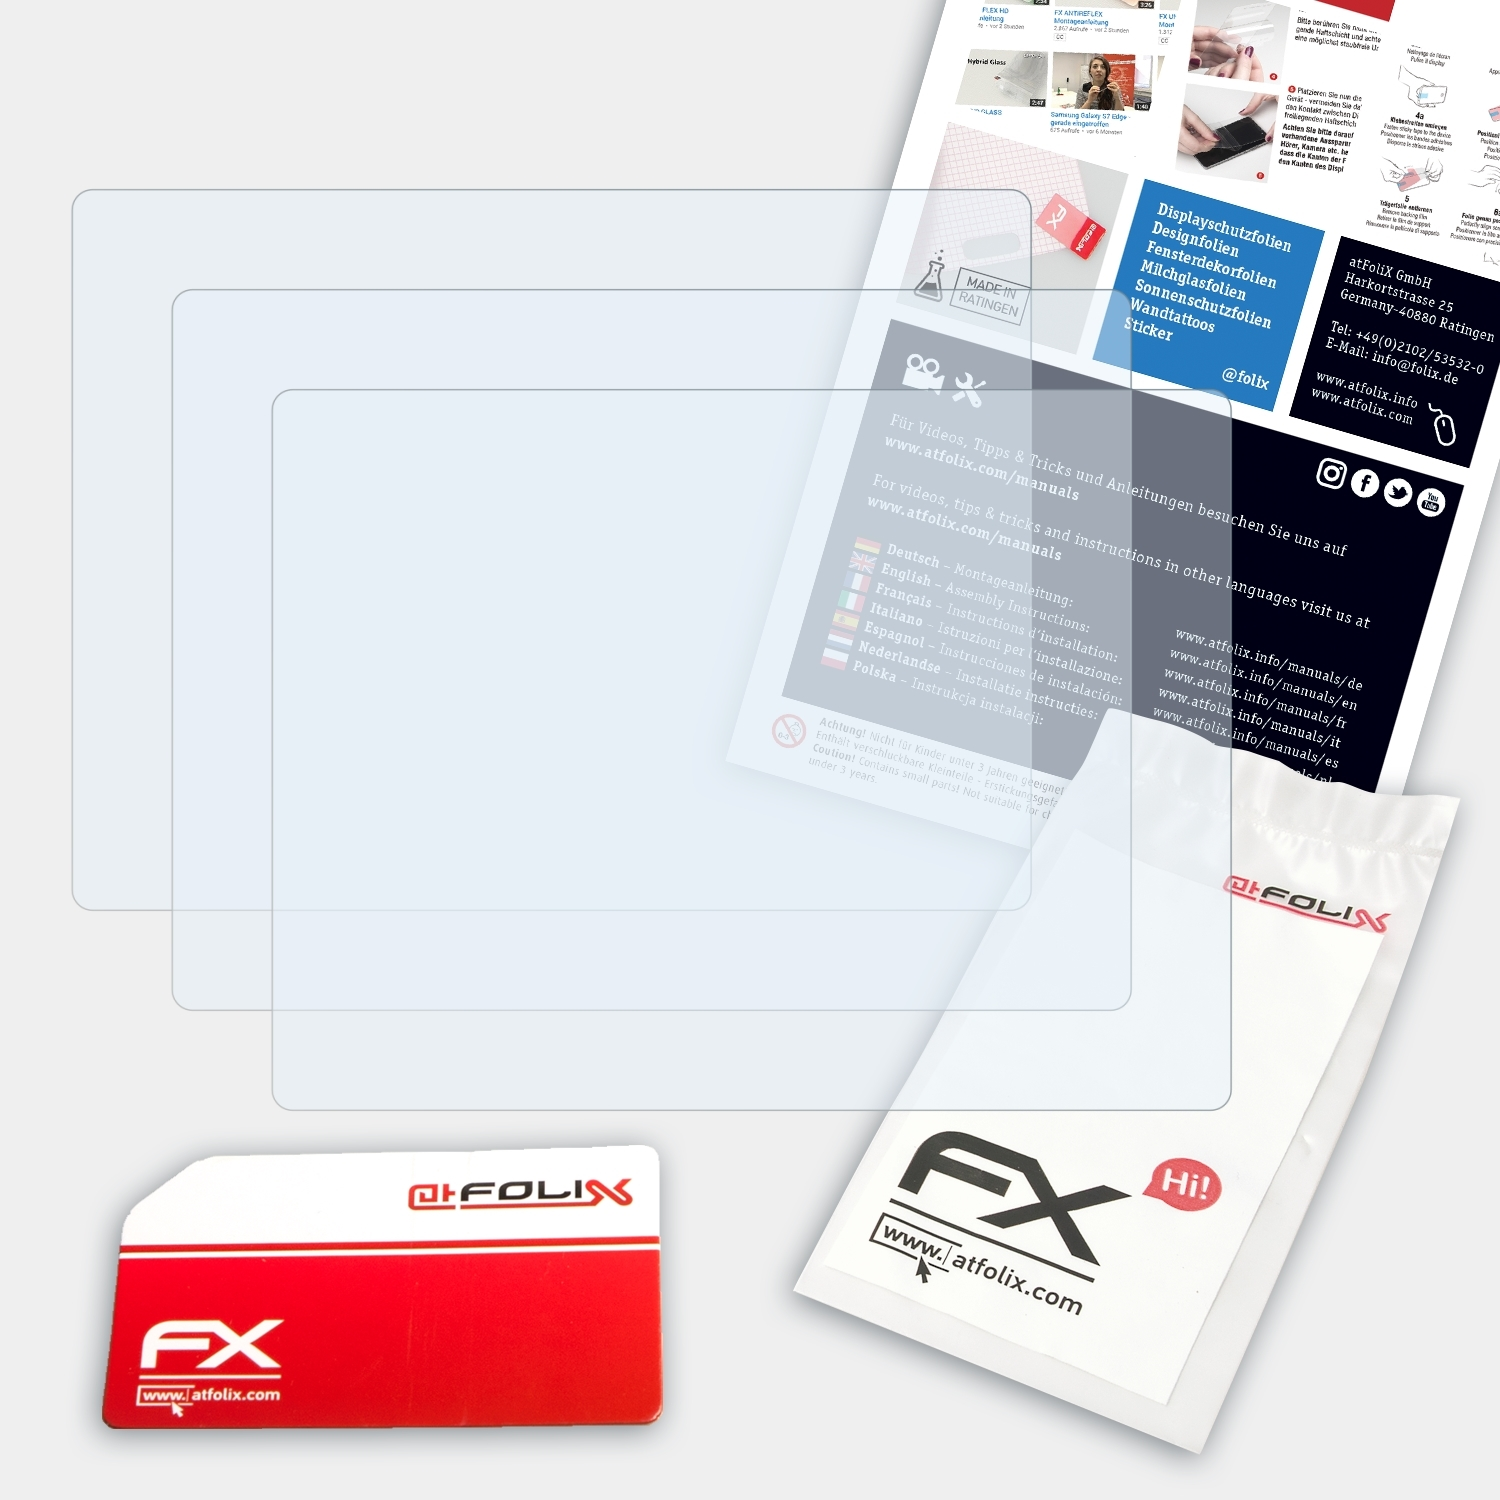 ATFOLIX 3x FX-Clear Displayschutz(für Fujifilm FinePix HS20EXR)